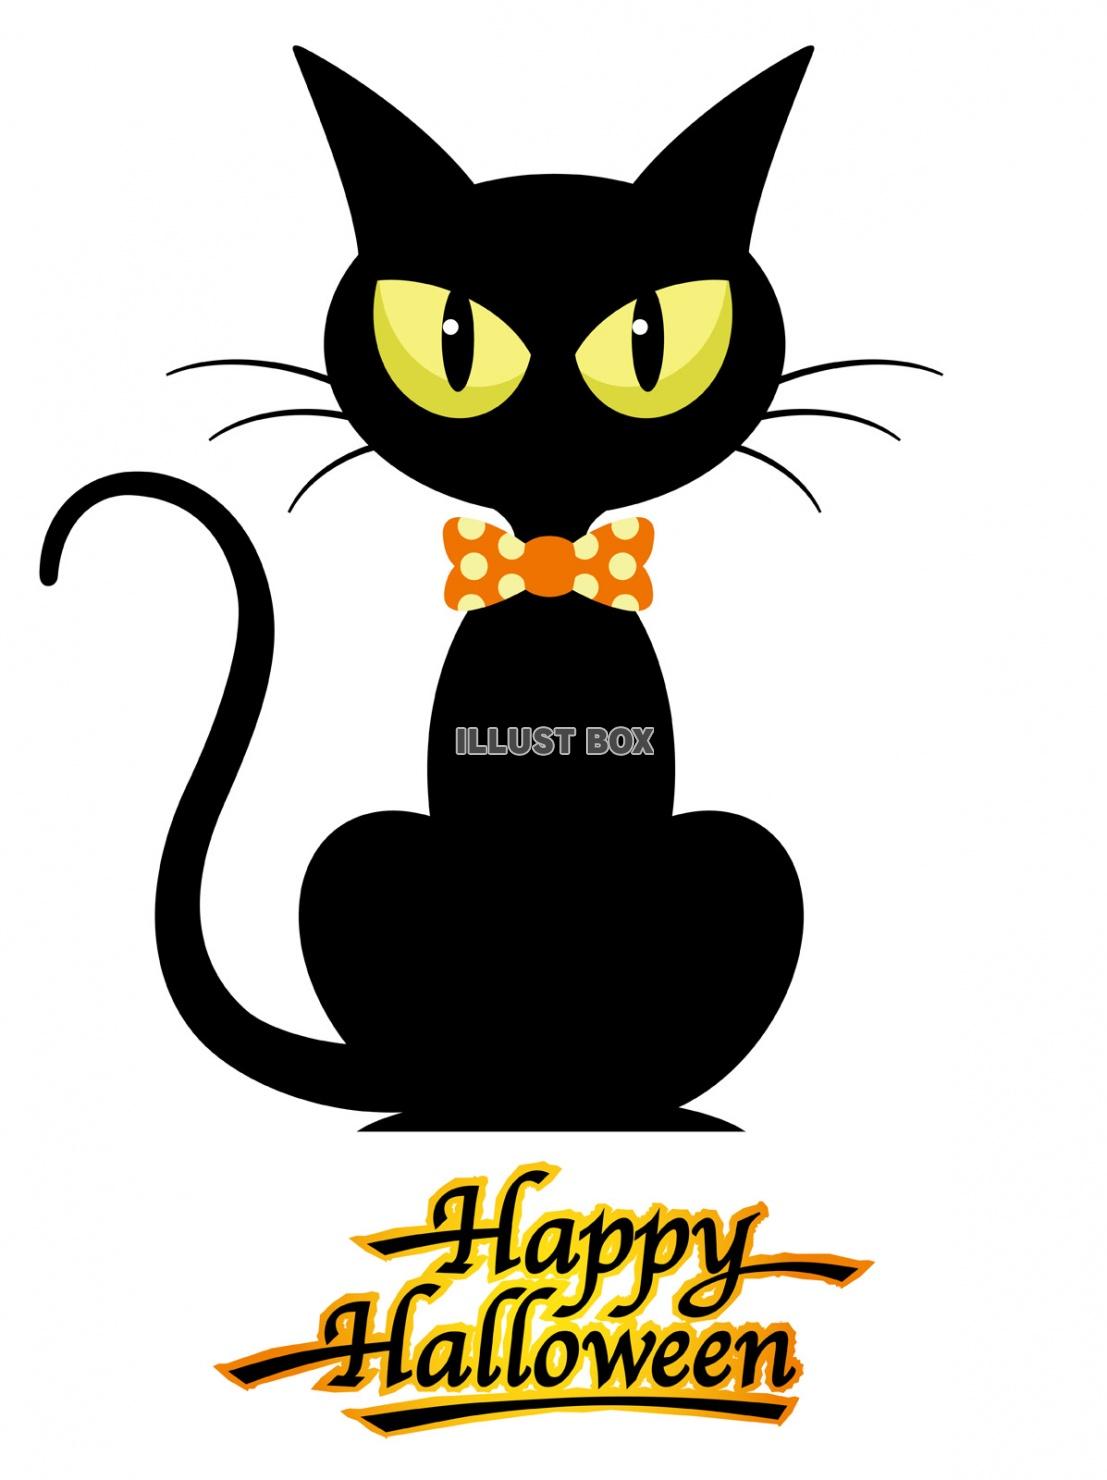 無料イラスト ハロウィーンのキャラクター 黒猫